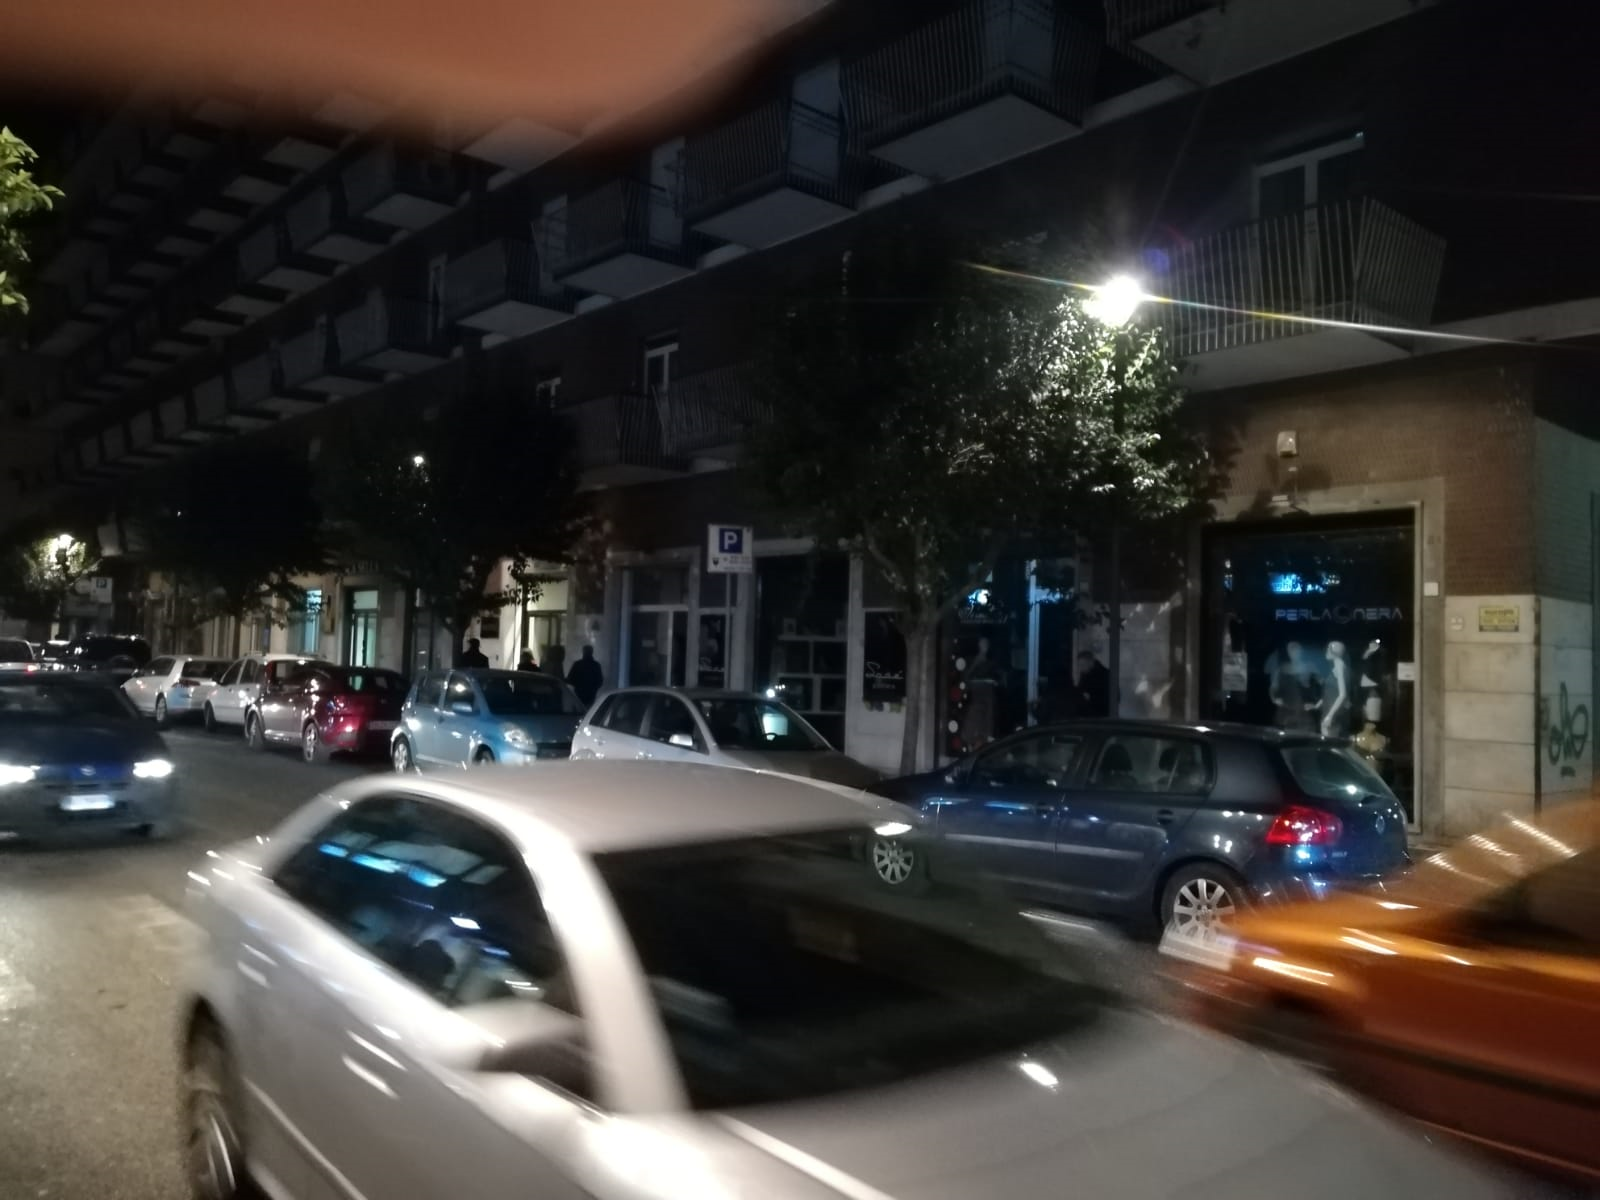 Avellino| Blocco auto in città: i negozi spengono le luci, Ciampi sotto accusa